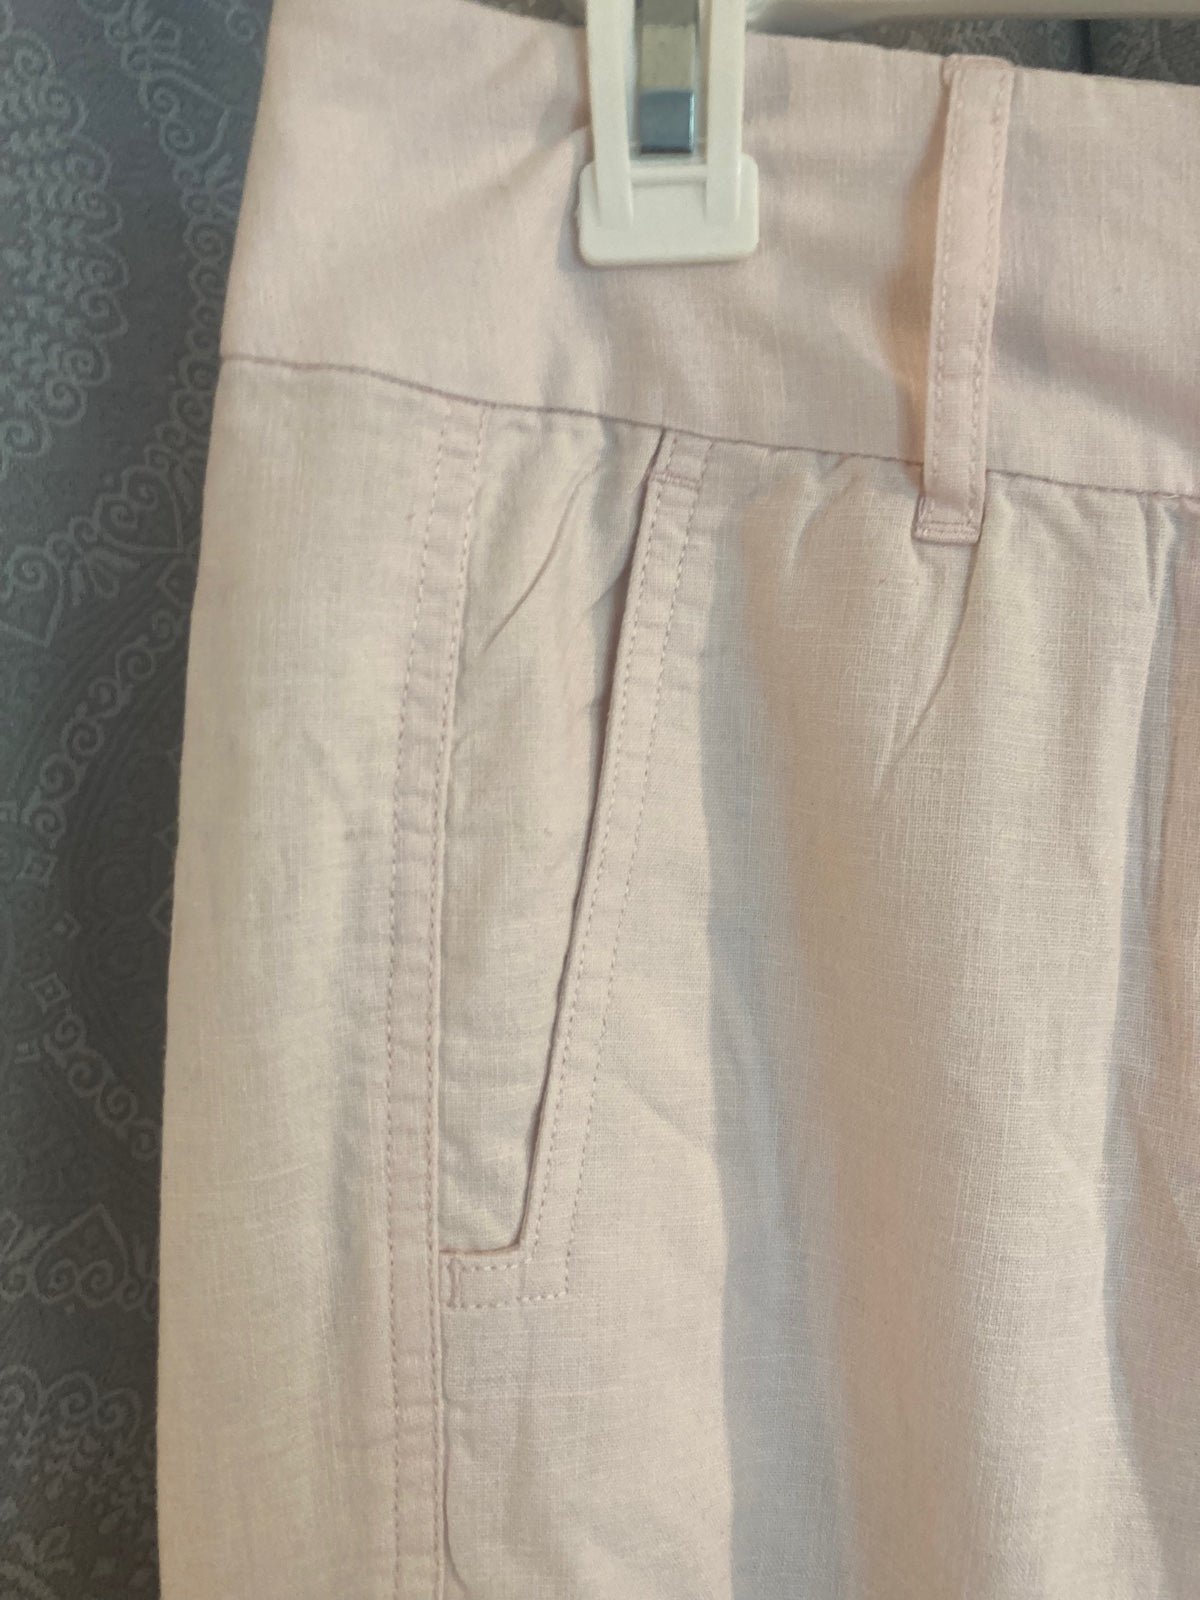 Exclusive Ann Taylor LOFT Pink Linen/Cotton Blend Summer Trouser KVPSt7APB Low Price